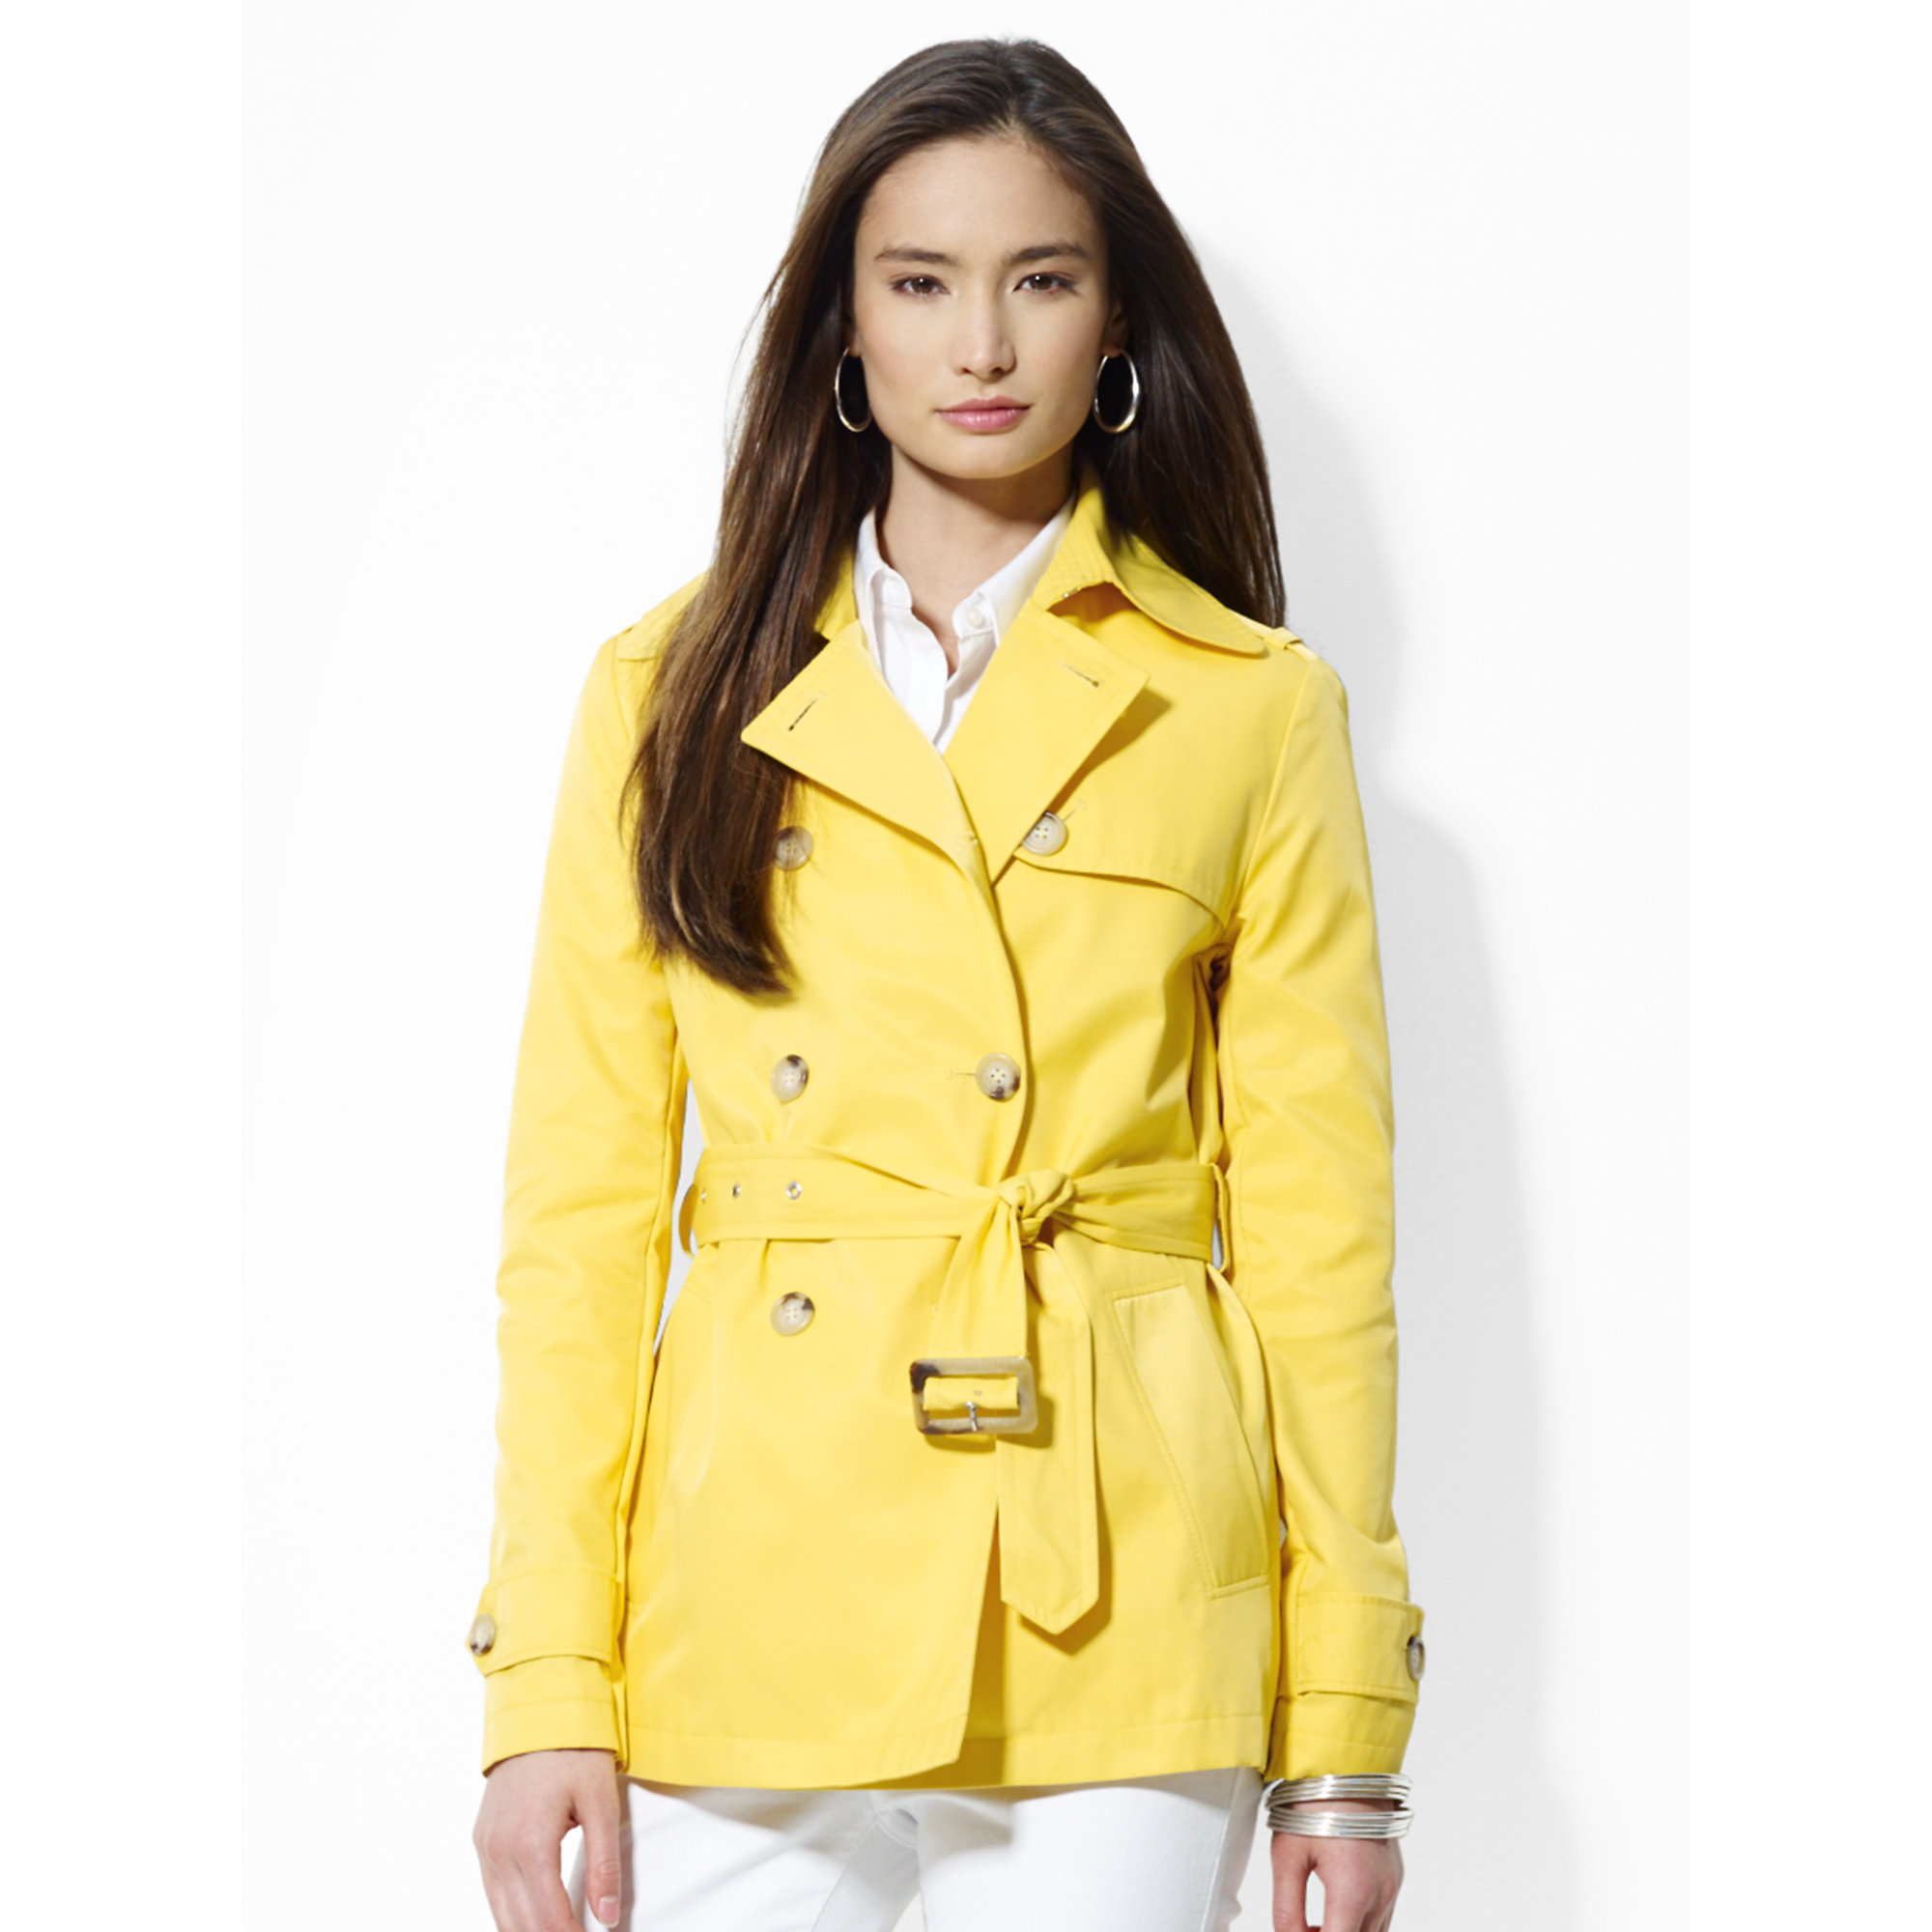 ralph lauren yellow raincoat